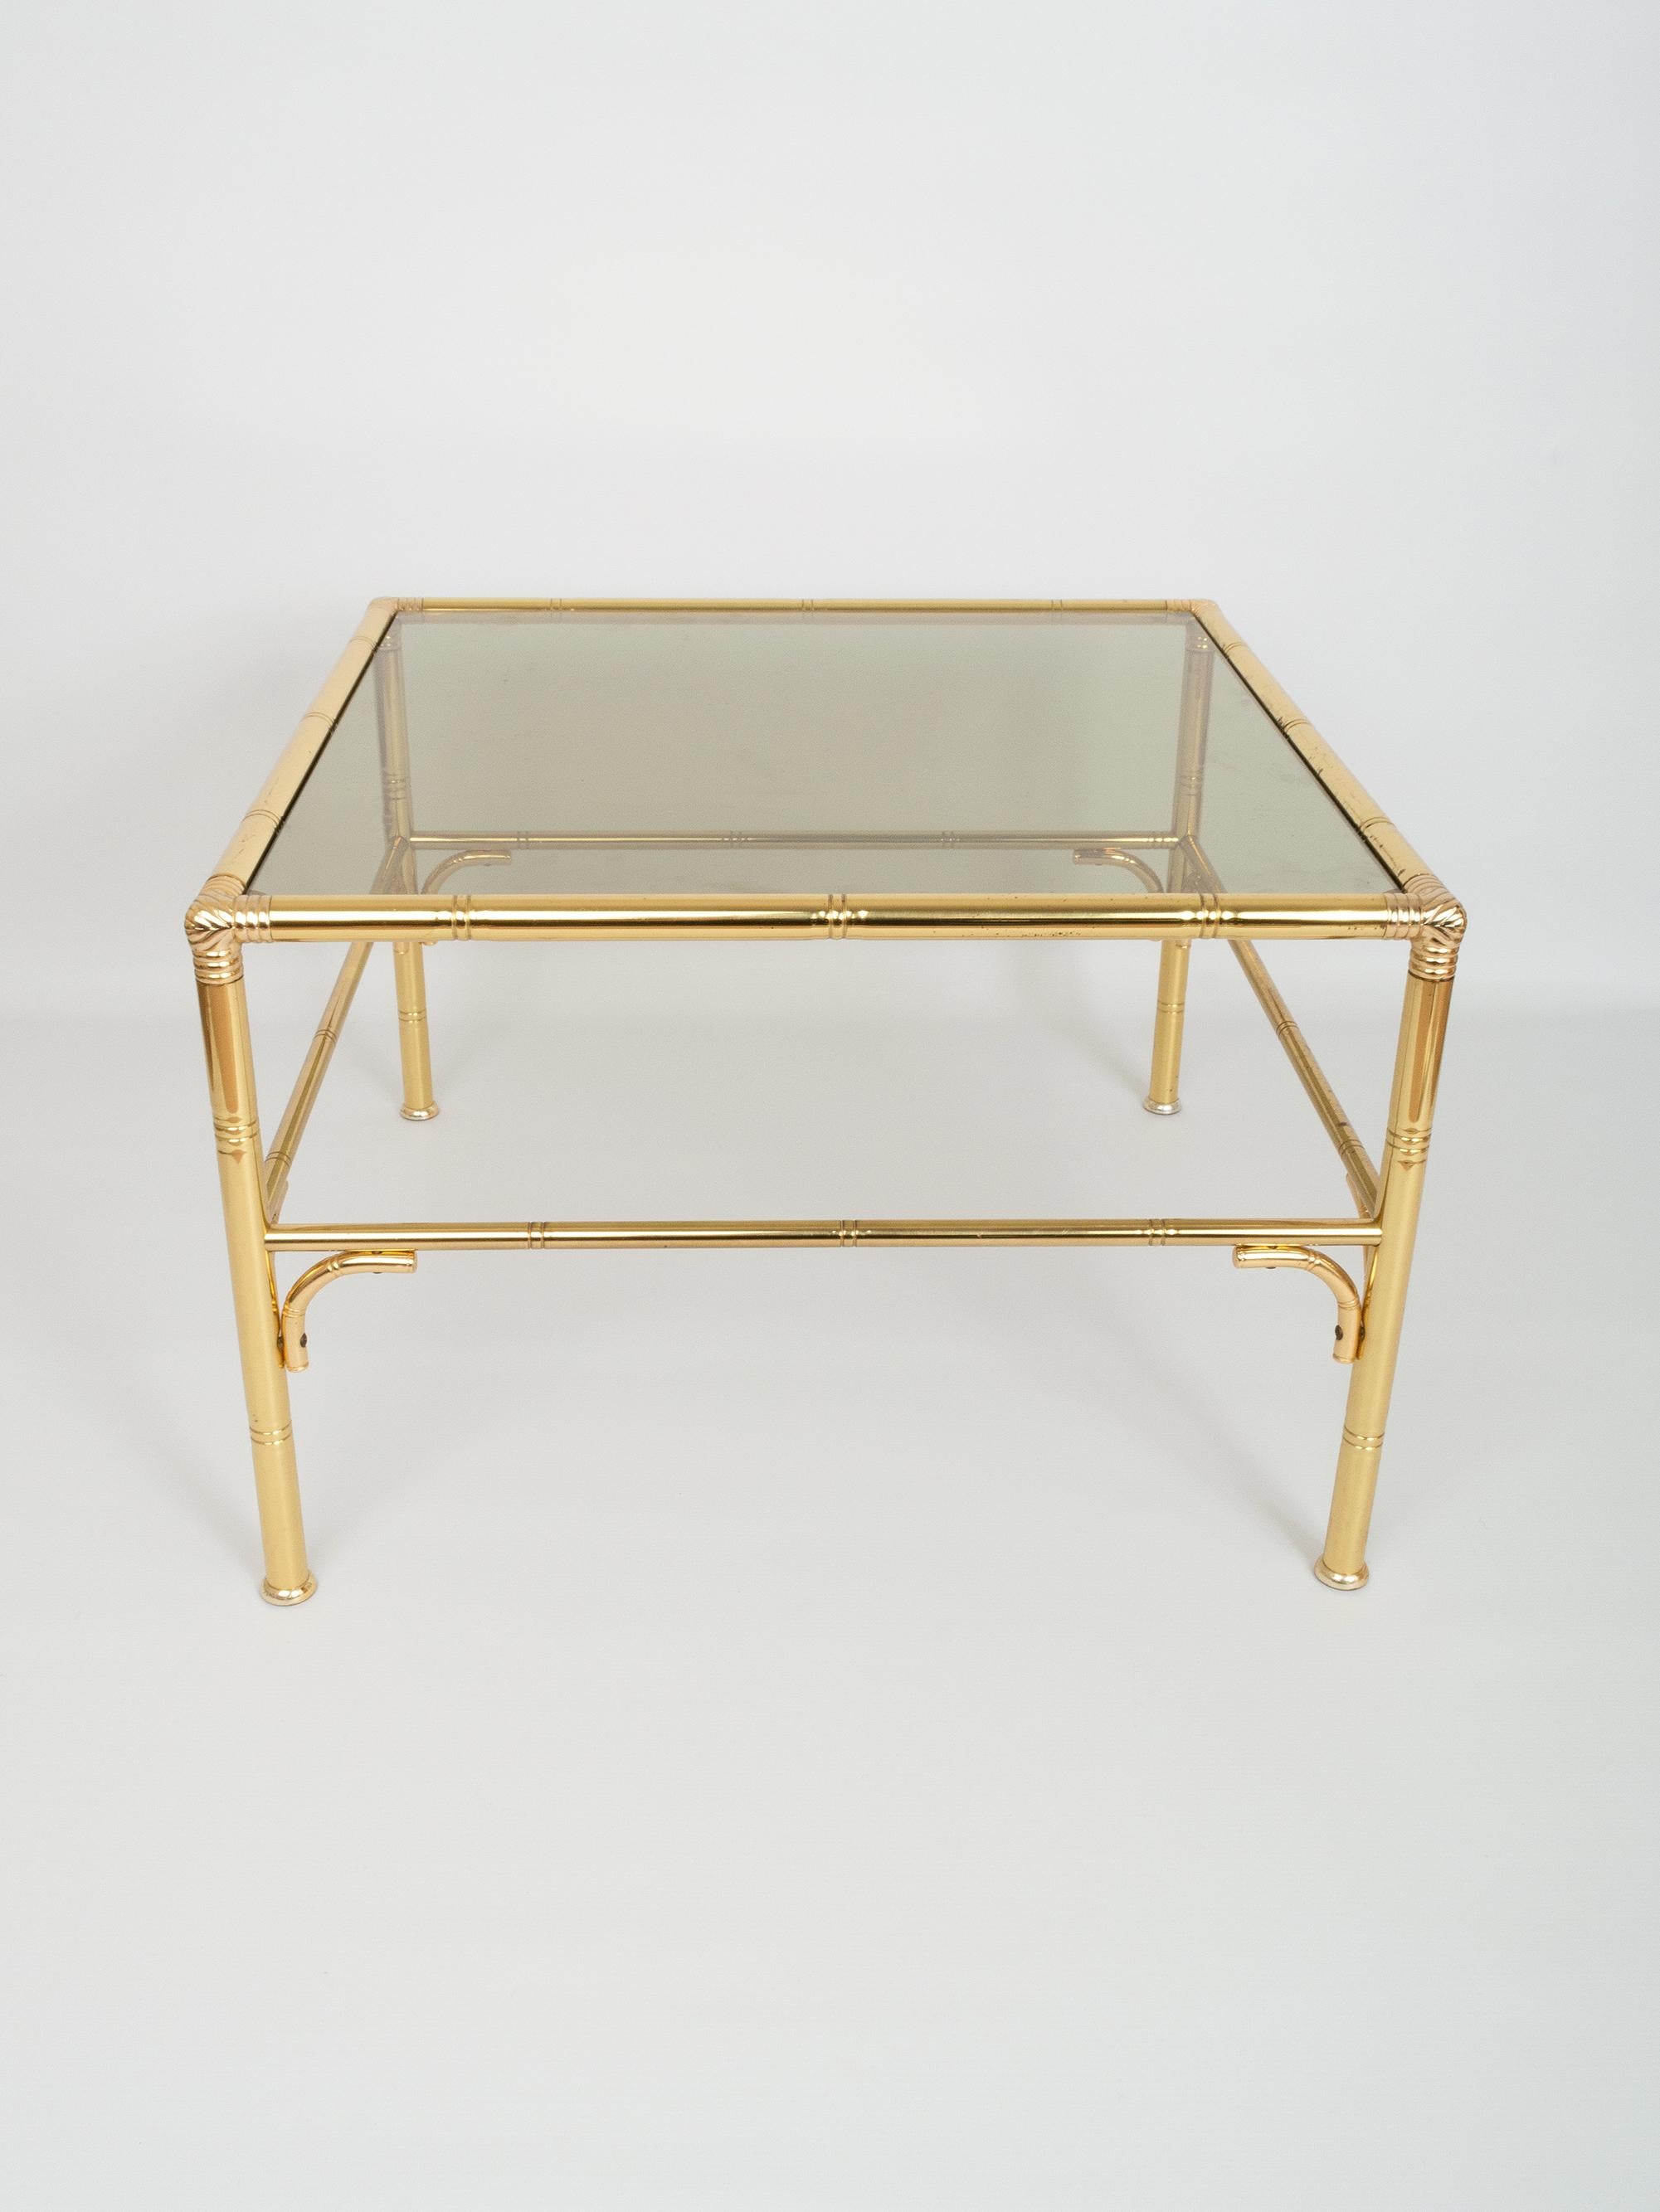 Table basse carrée du milieu du siècle en faux bambou, laiton doré et verre, Italie, vers 1970.
Présenté en très bon état vintage proportionnel à l'âge.